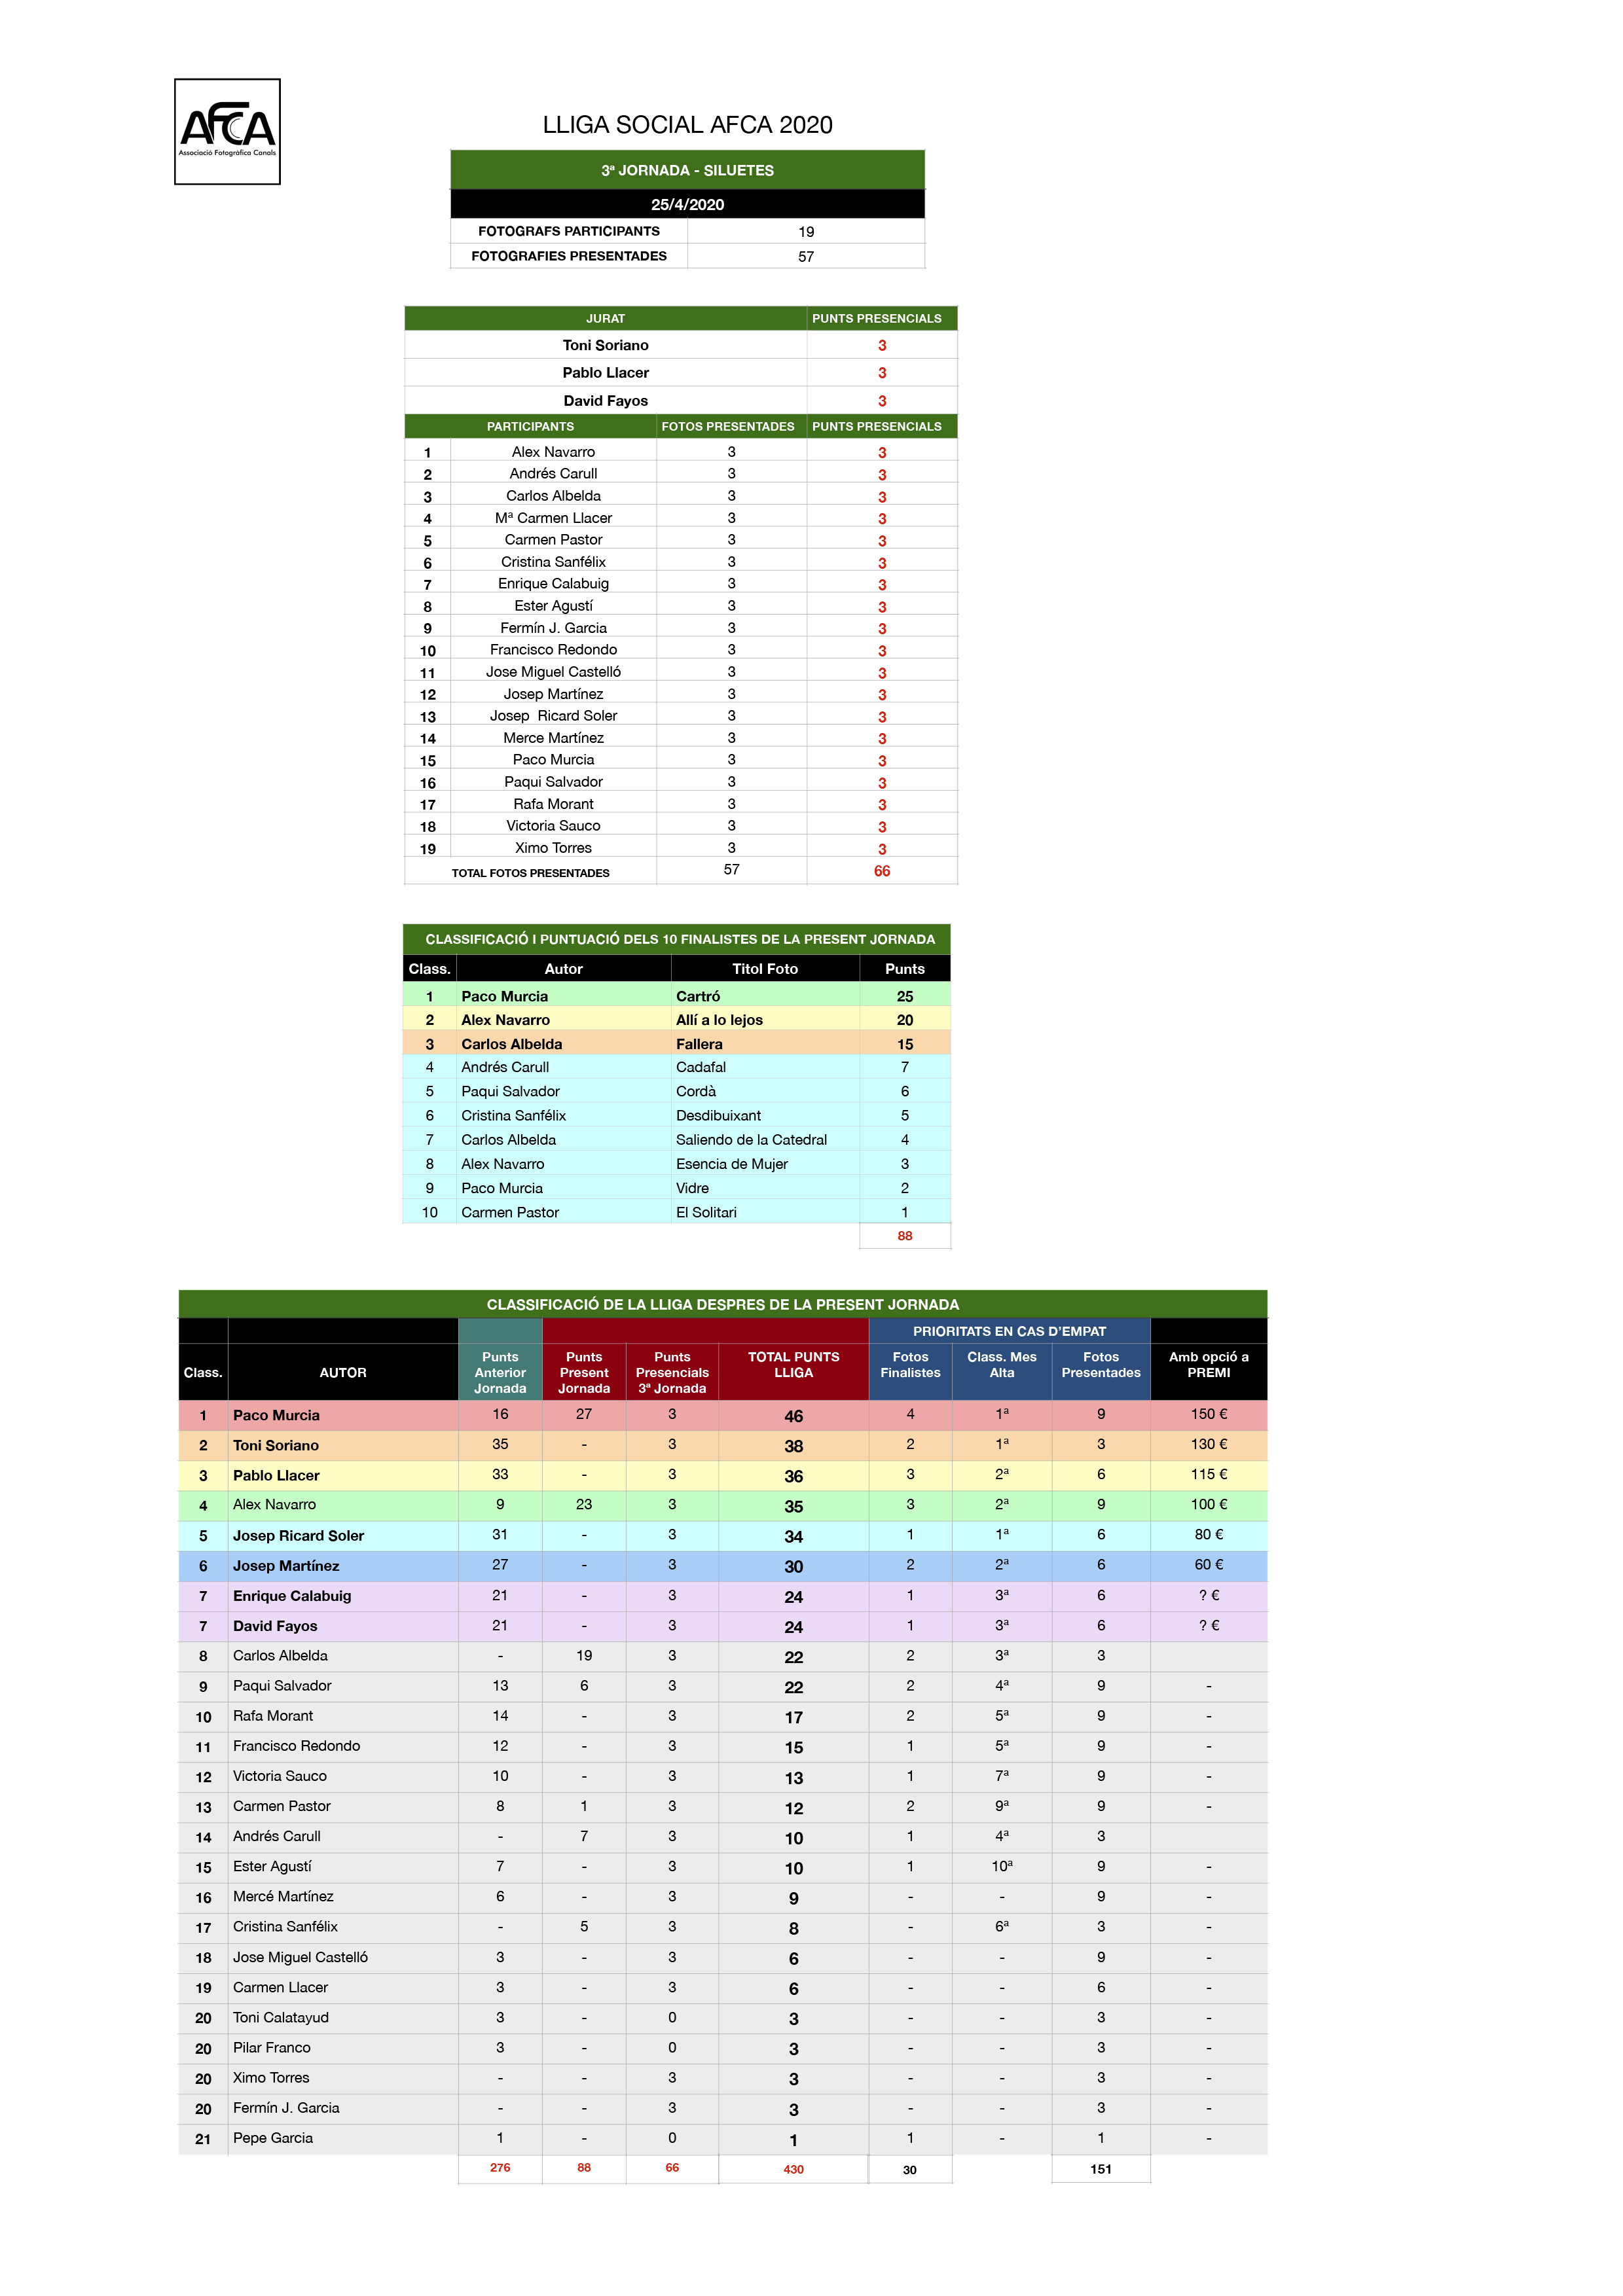 LLIGA AFCA 2020 classificació -3 SILUETES